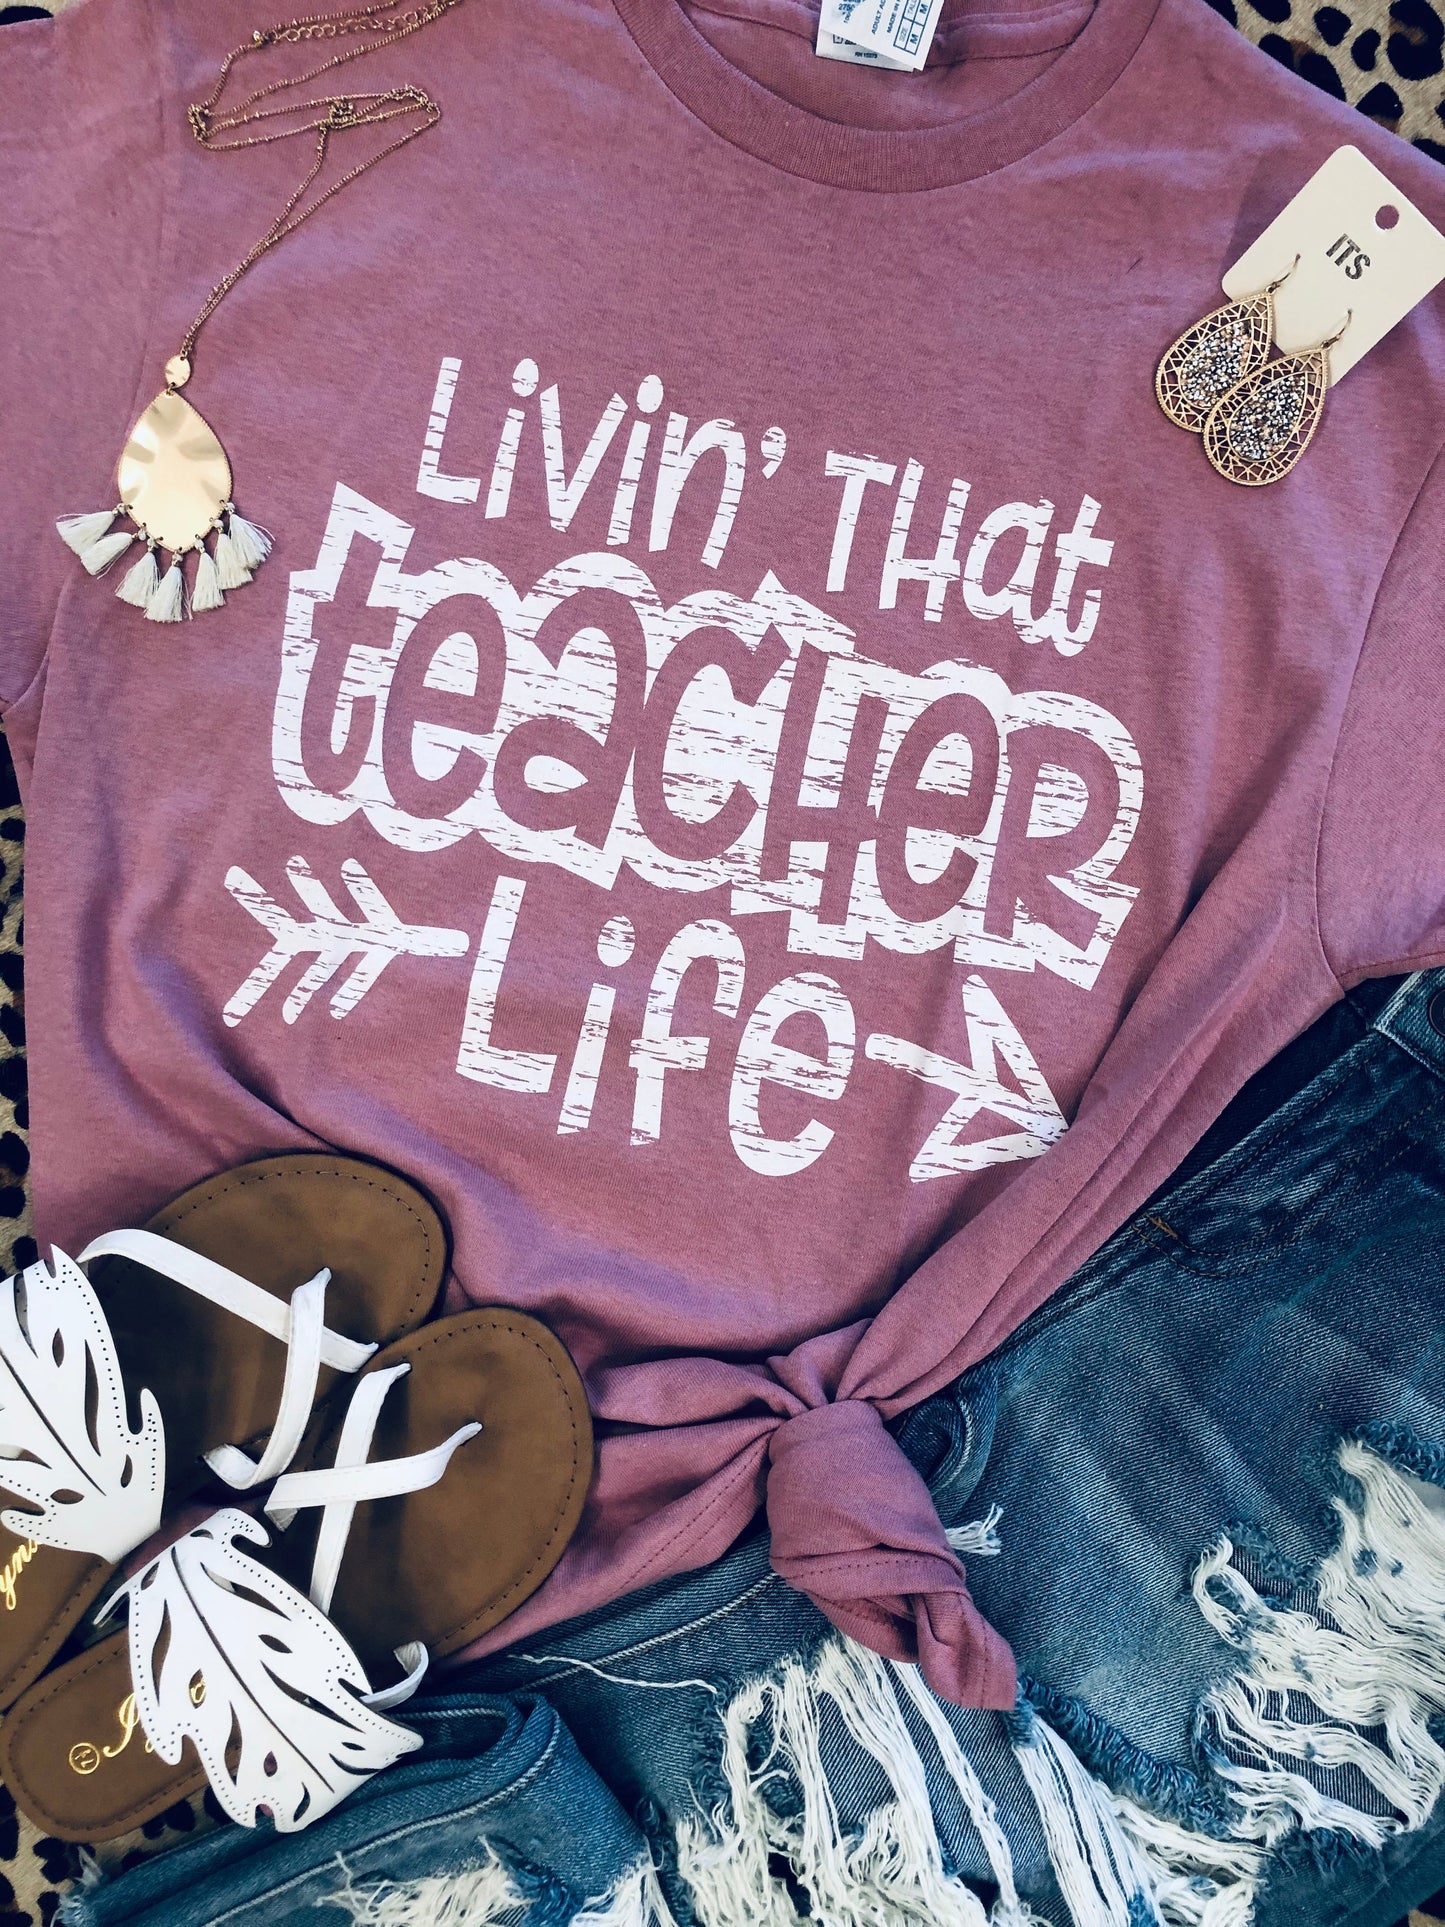 Livin’ that teacher life